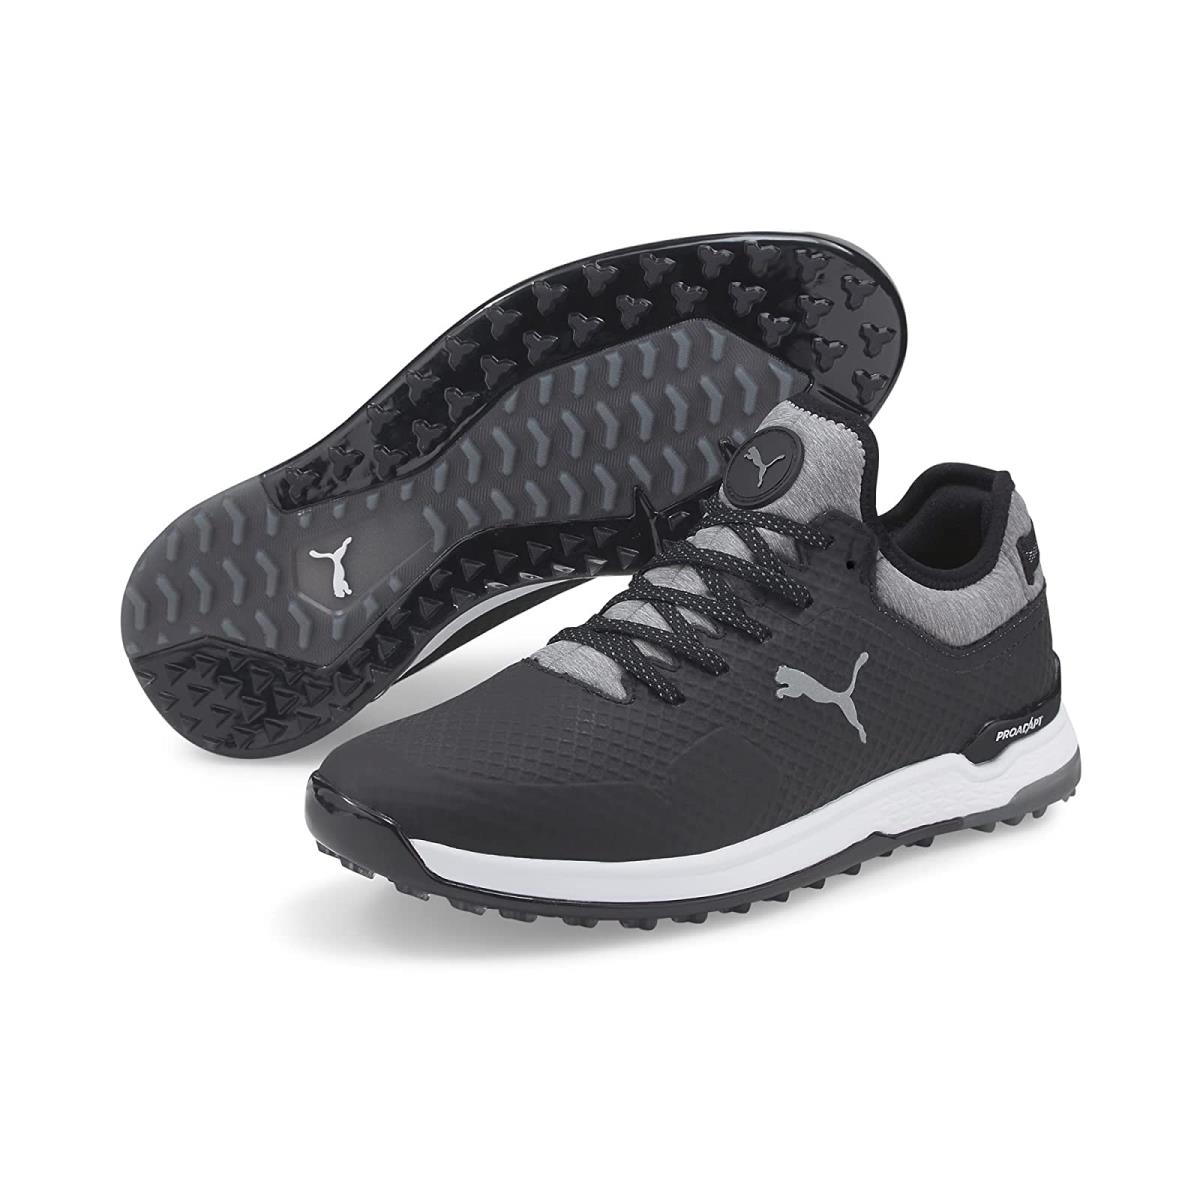 Man`s Sneakers Athletic Shoes Puma Golf Proadapt Alphacat Puma Black/Puma Silver/Quiet Shade